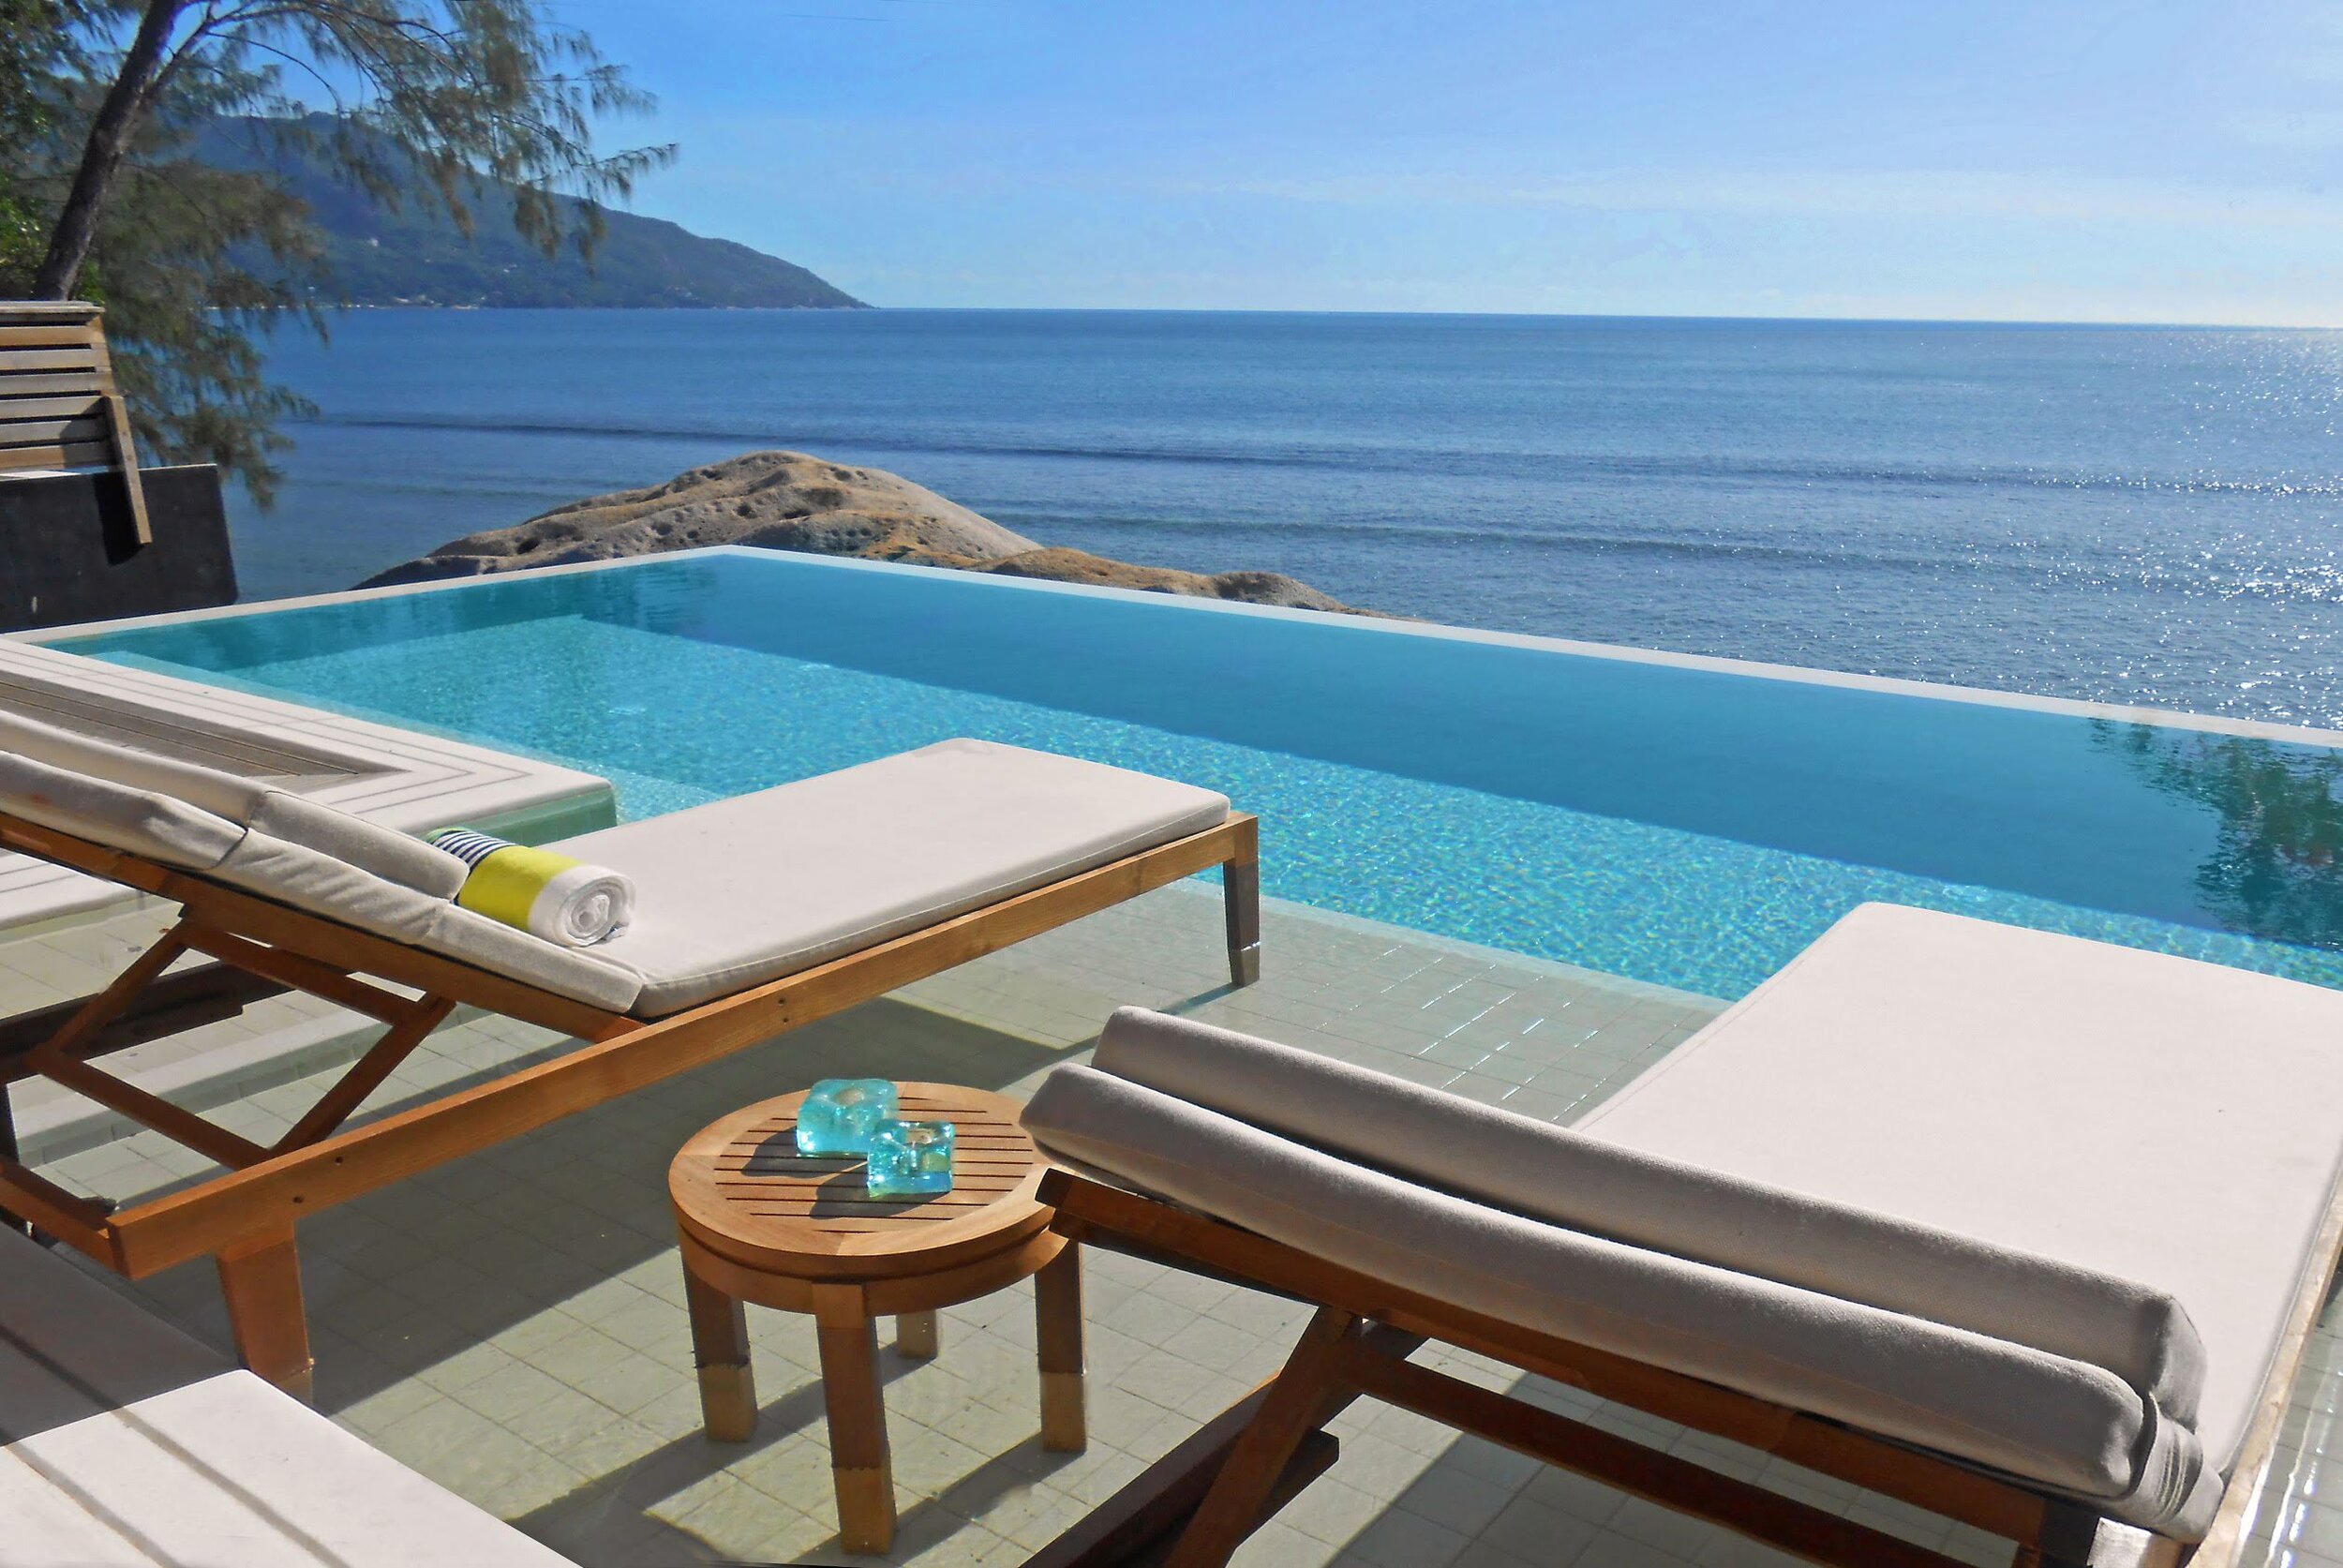 HHR_Seychelles_Northolme_Grand_Ocean_View_Pool_Villa_Infinity_Pool_HR.jpg